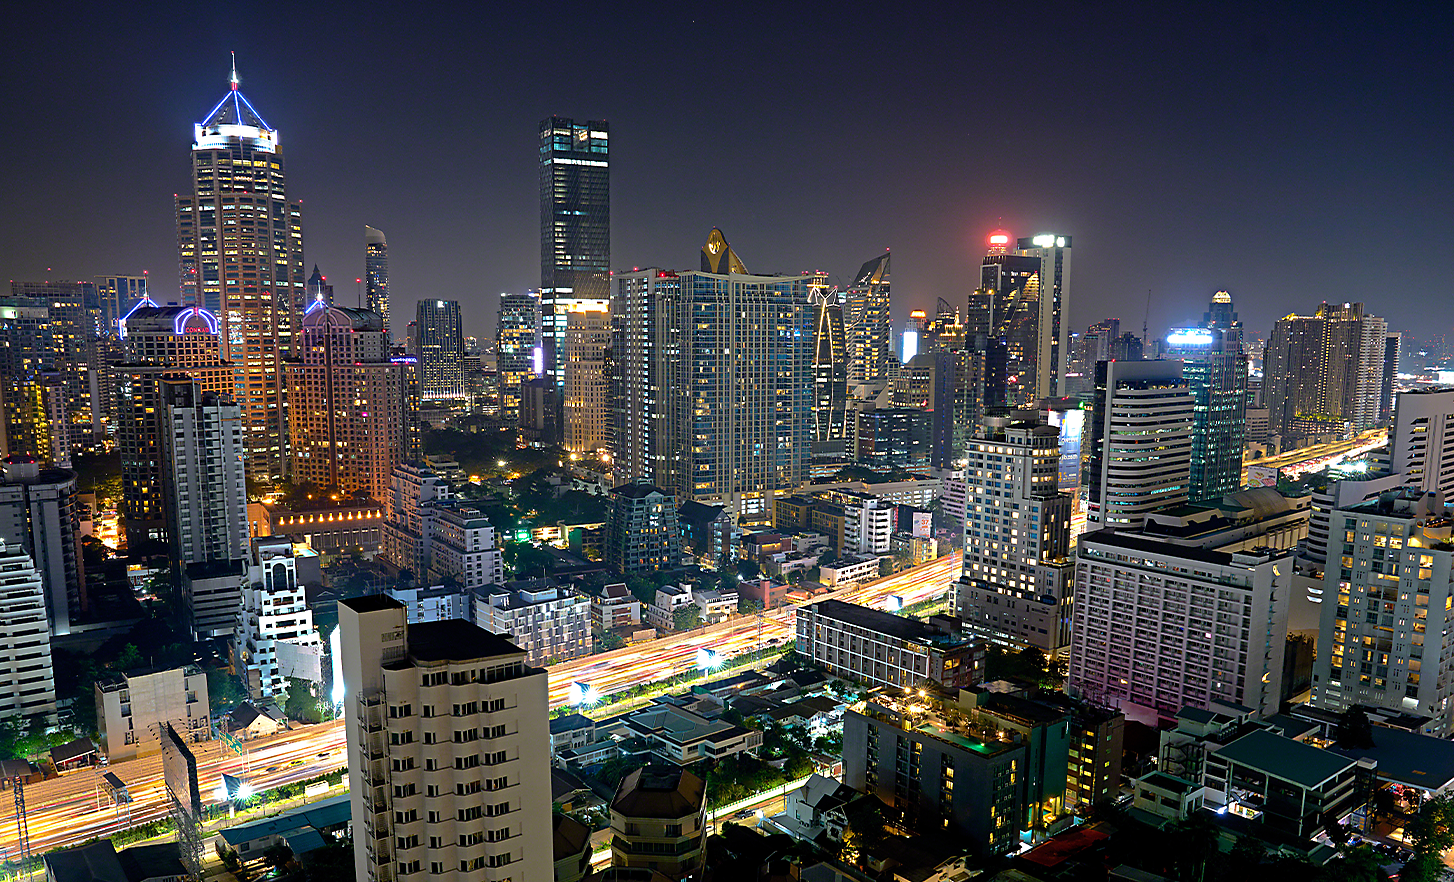 Un paisaje urbano de noche, fotografiado desde una posición elevada